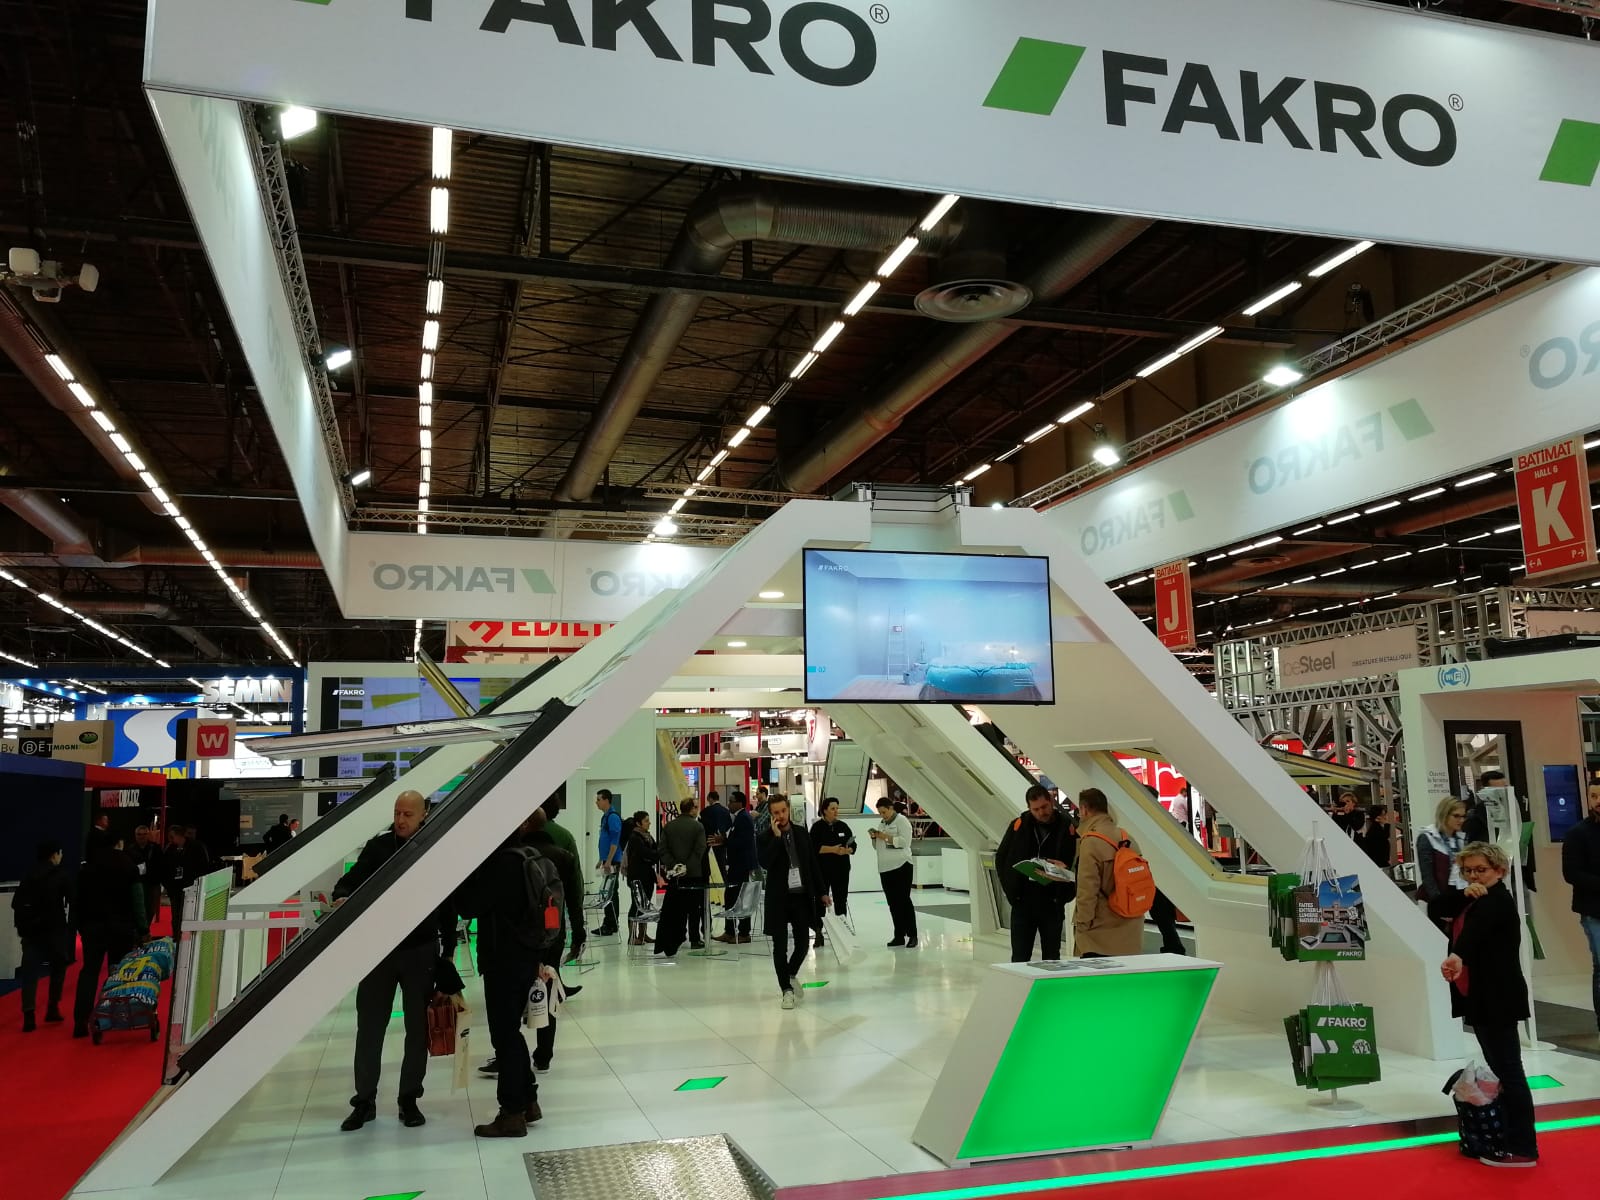 FAKRO（法克罗）-全球专业的斜屋顶天窗领导品牌  网址：www.fakro58.com  电话：400-666-1106